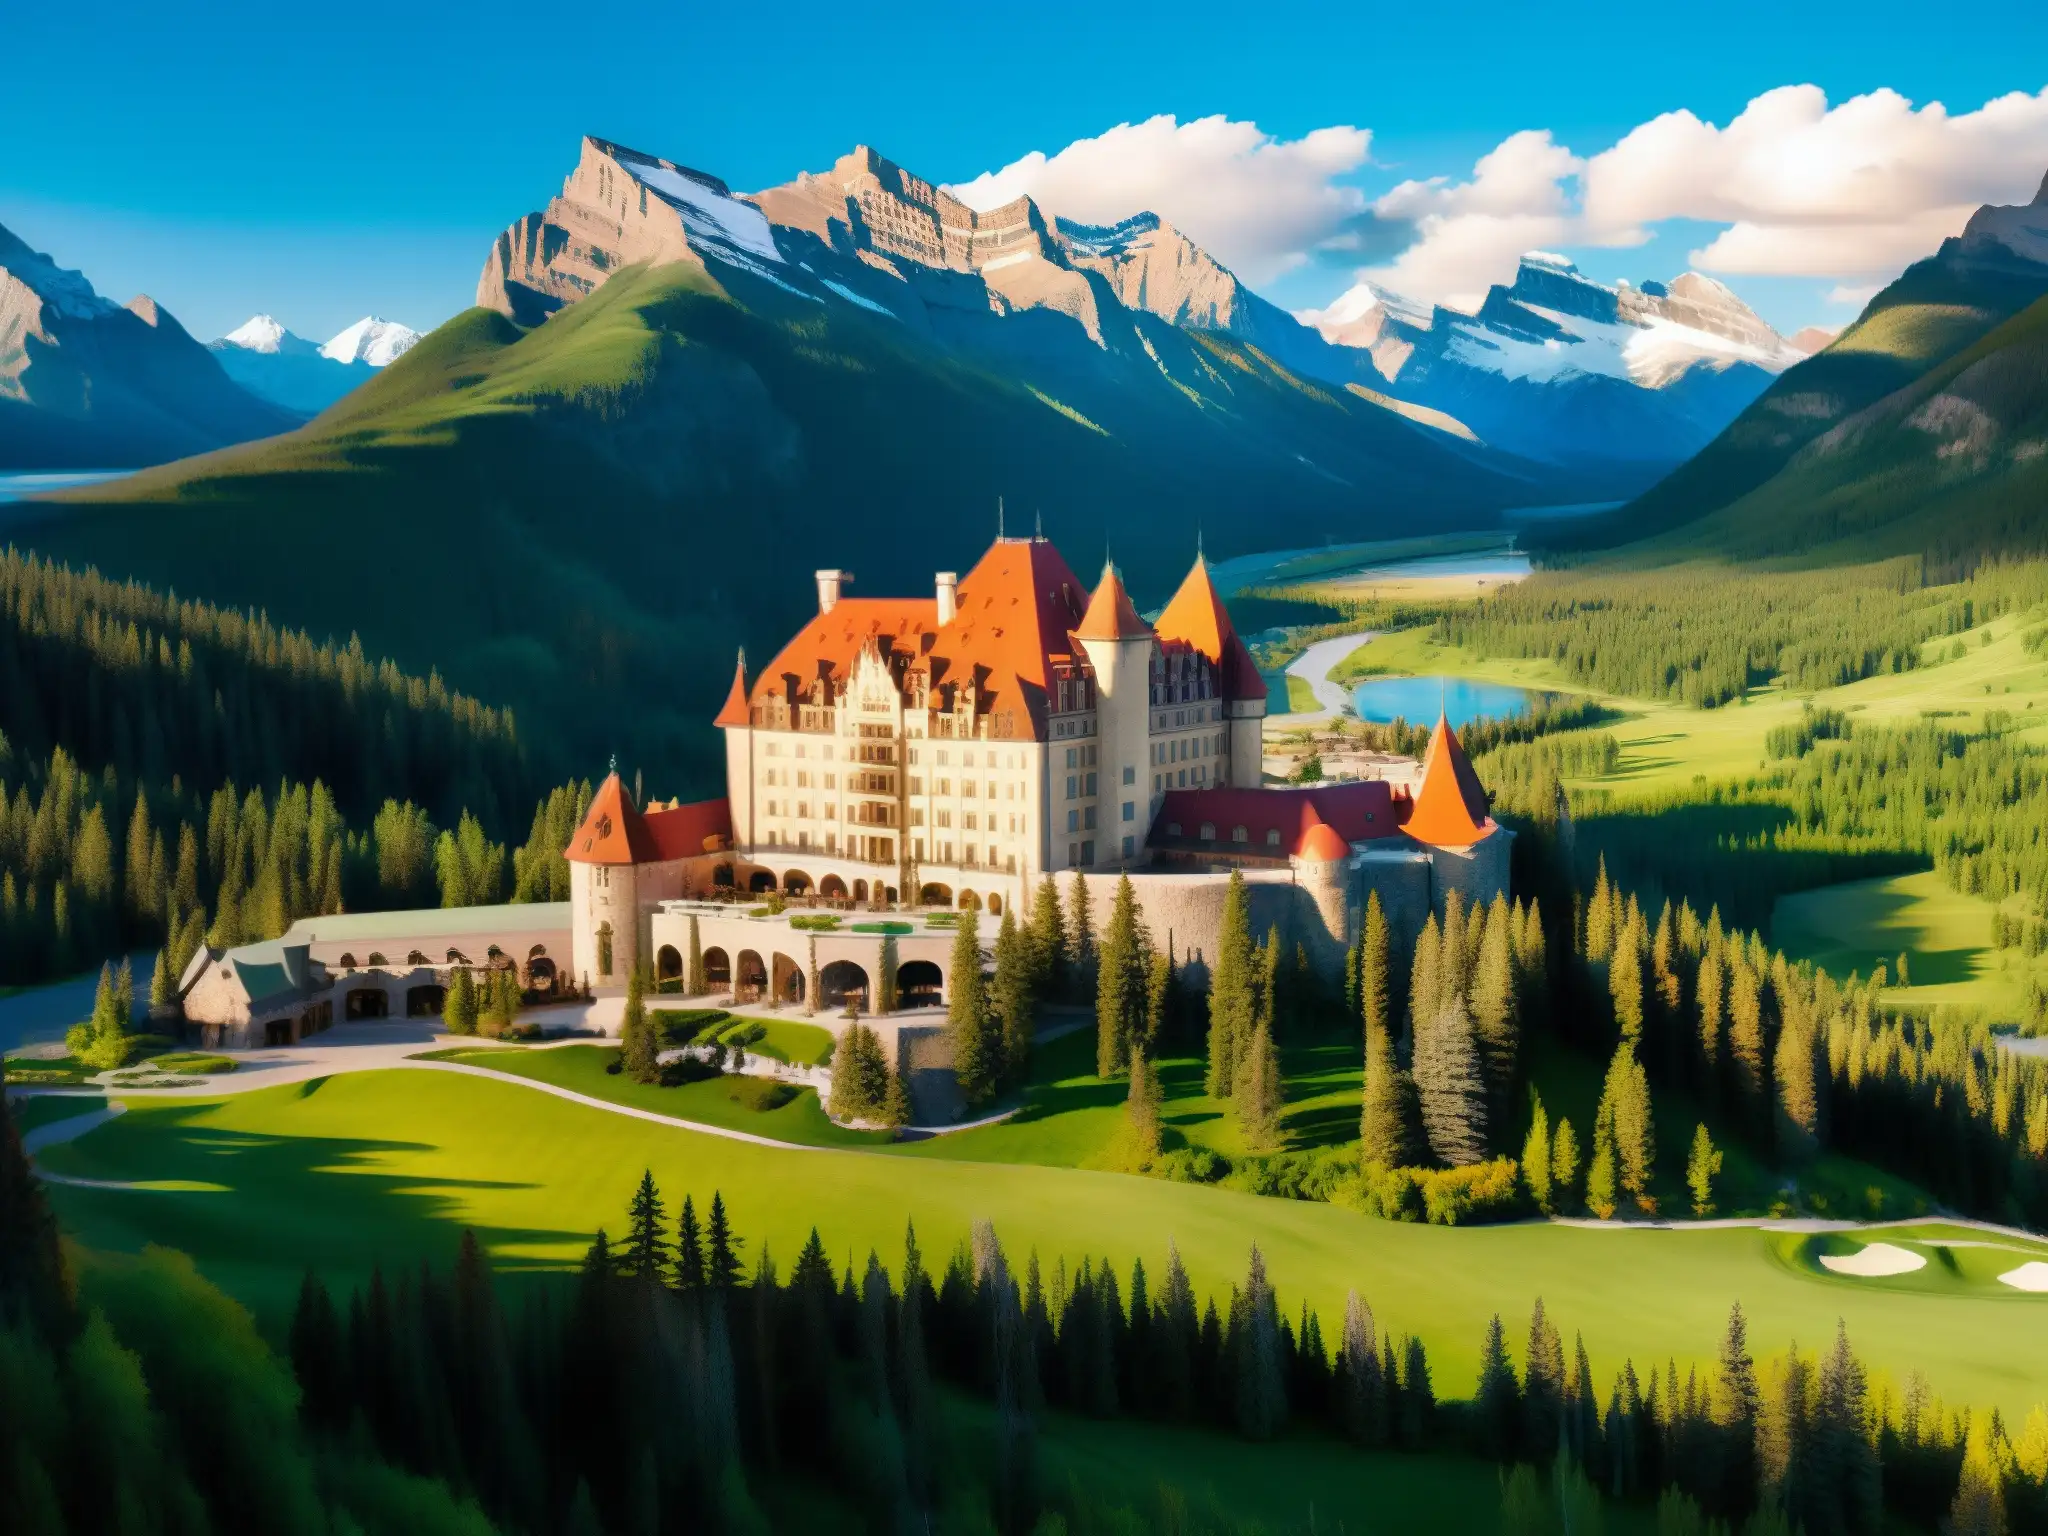 El majestuoso hotel Fairmont Banff Springs se asoma entre las montañas rocosas de Canadá, iluminado por cálida luz dorada